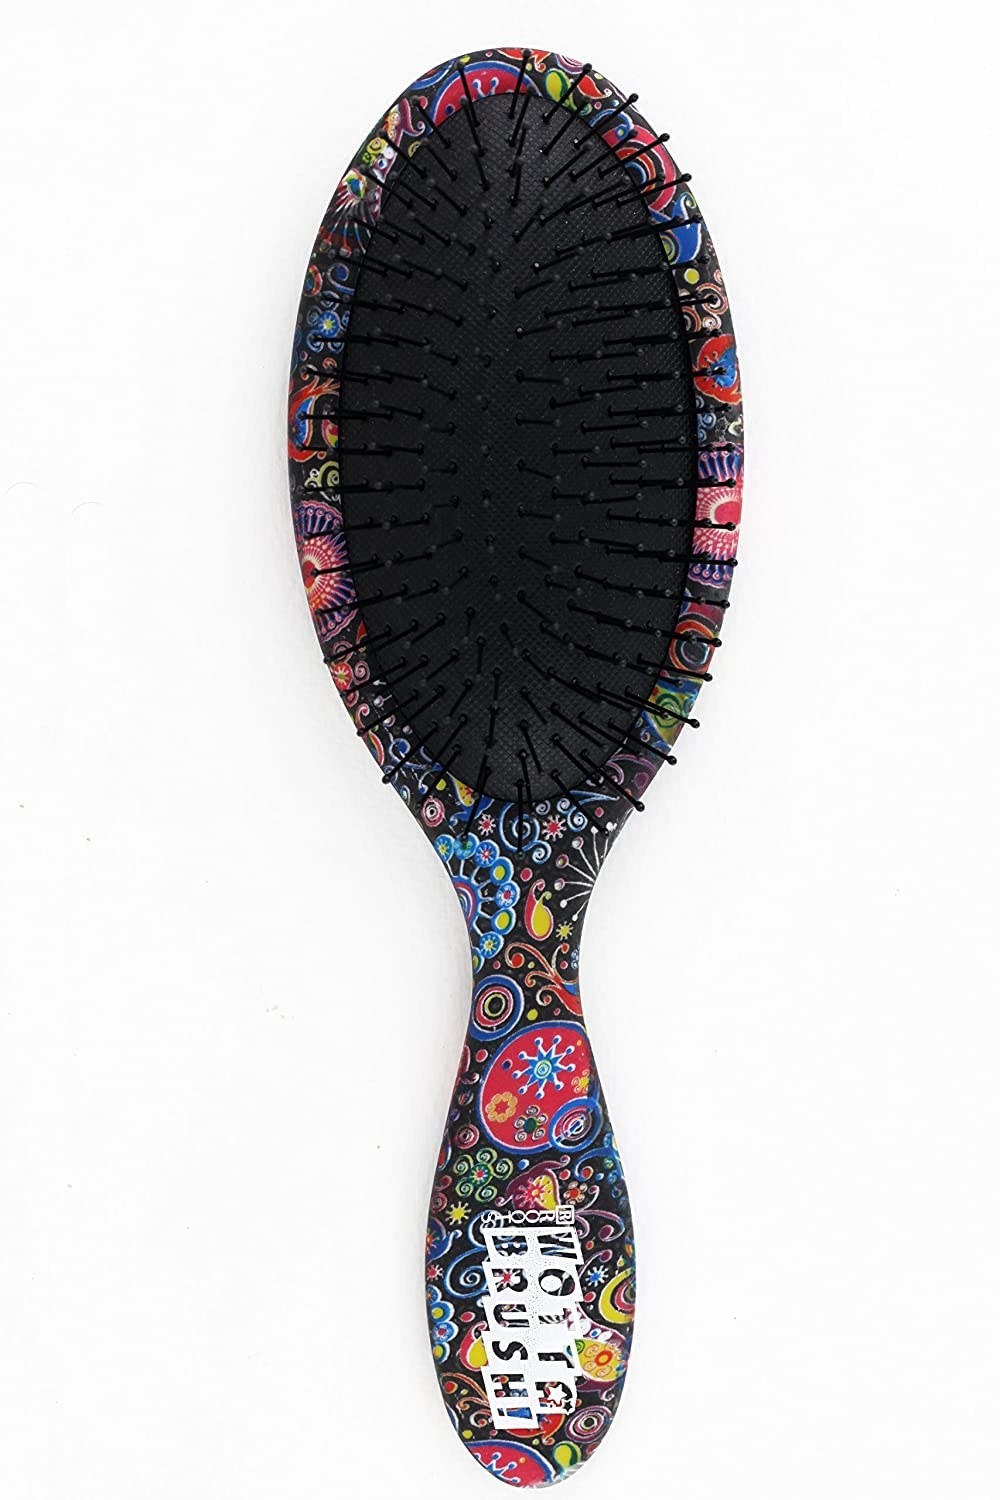 A colourful hairbrush